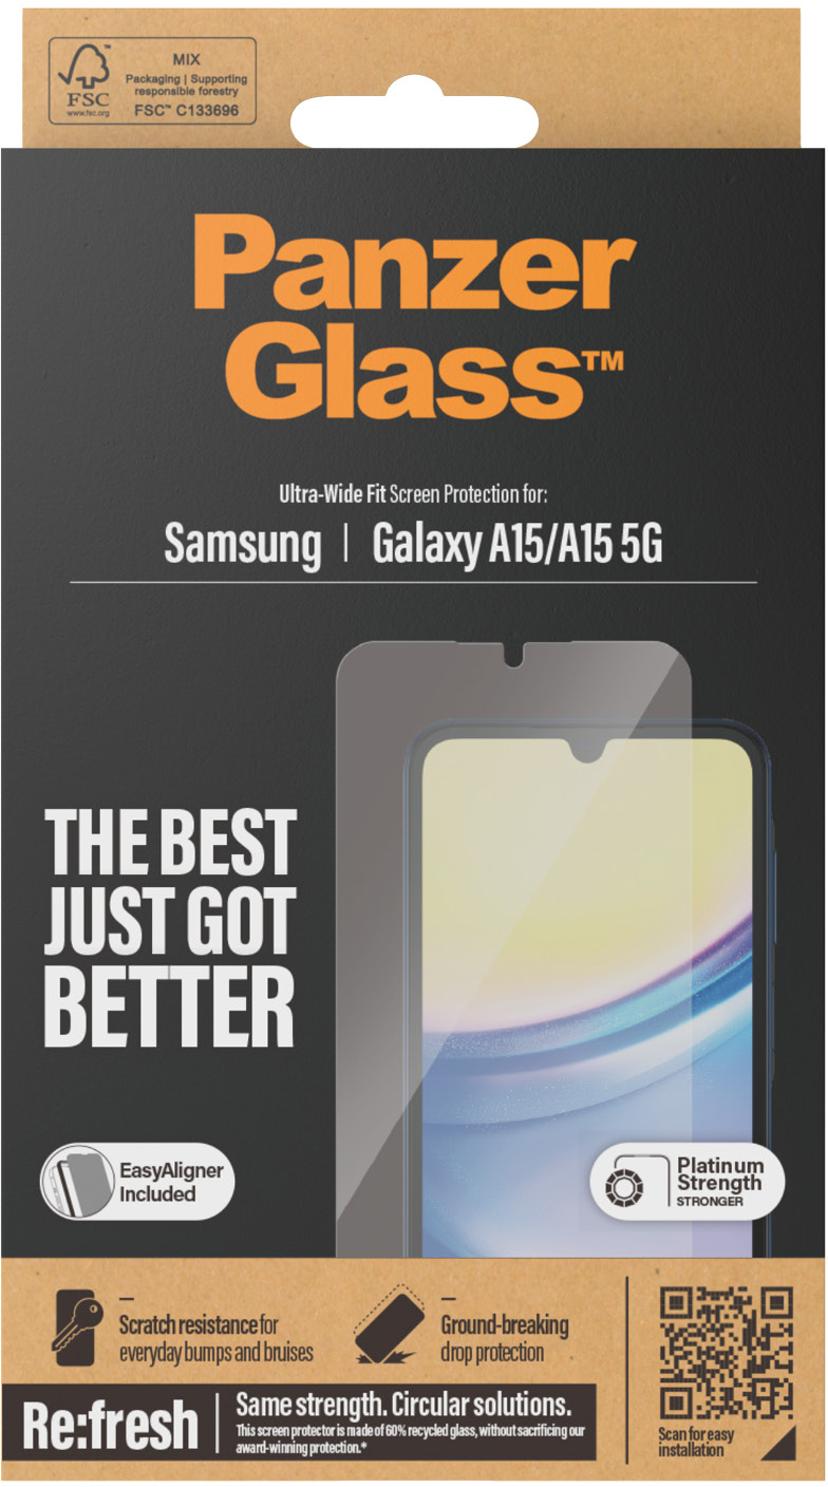 Panzerglass Ultra-Wide Fit Samsung Galaxy A15, Samsung Galaxy A15 5G